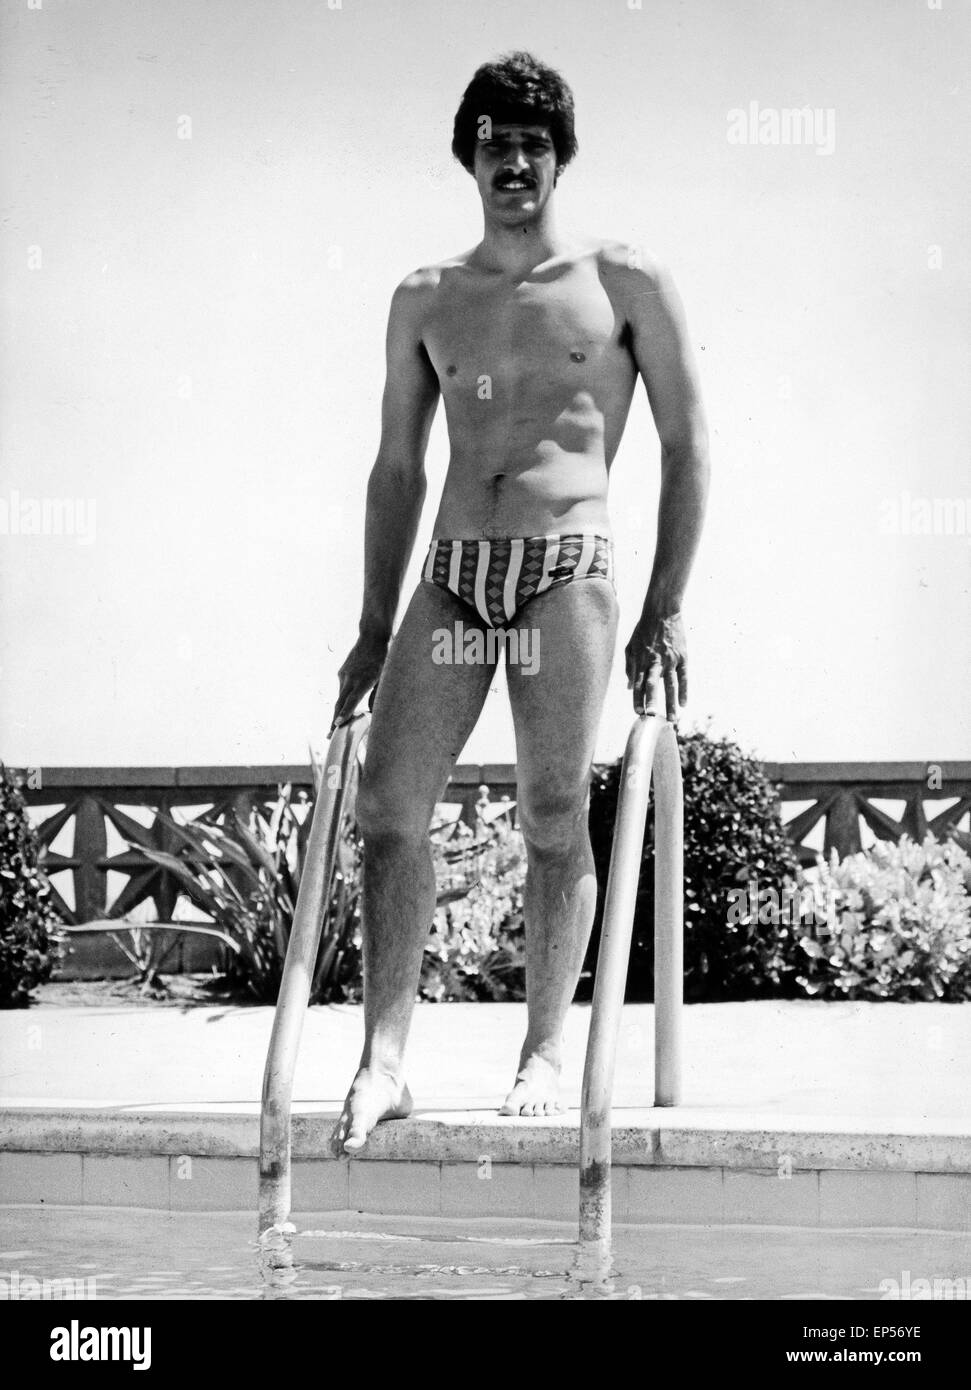 Der amerikanische Weltklasse Schwimmer Mark Spitz bei den Olympischen Spielen in München, Deutschland 1970er Jahre. American wor Stock Photo